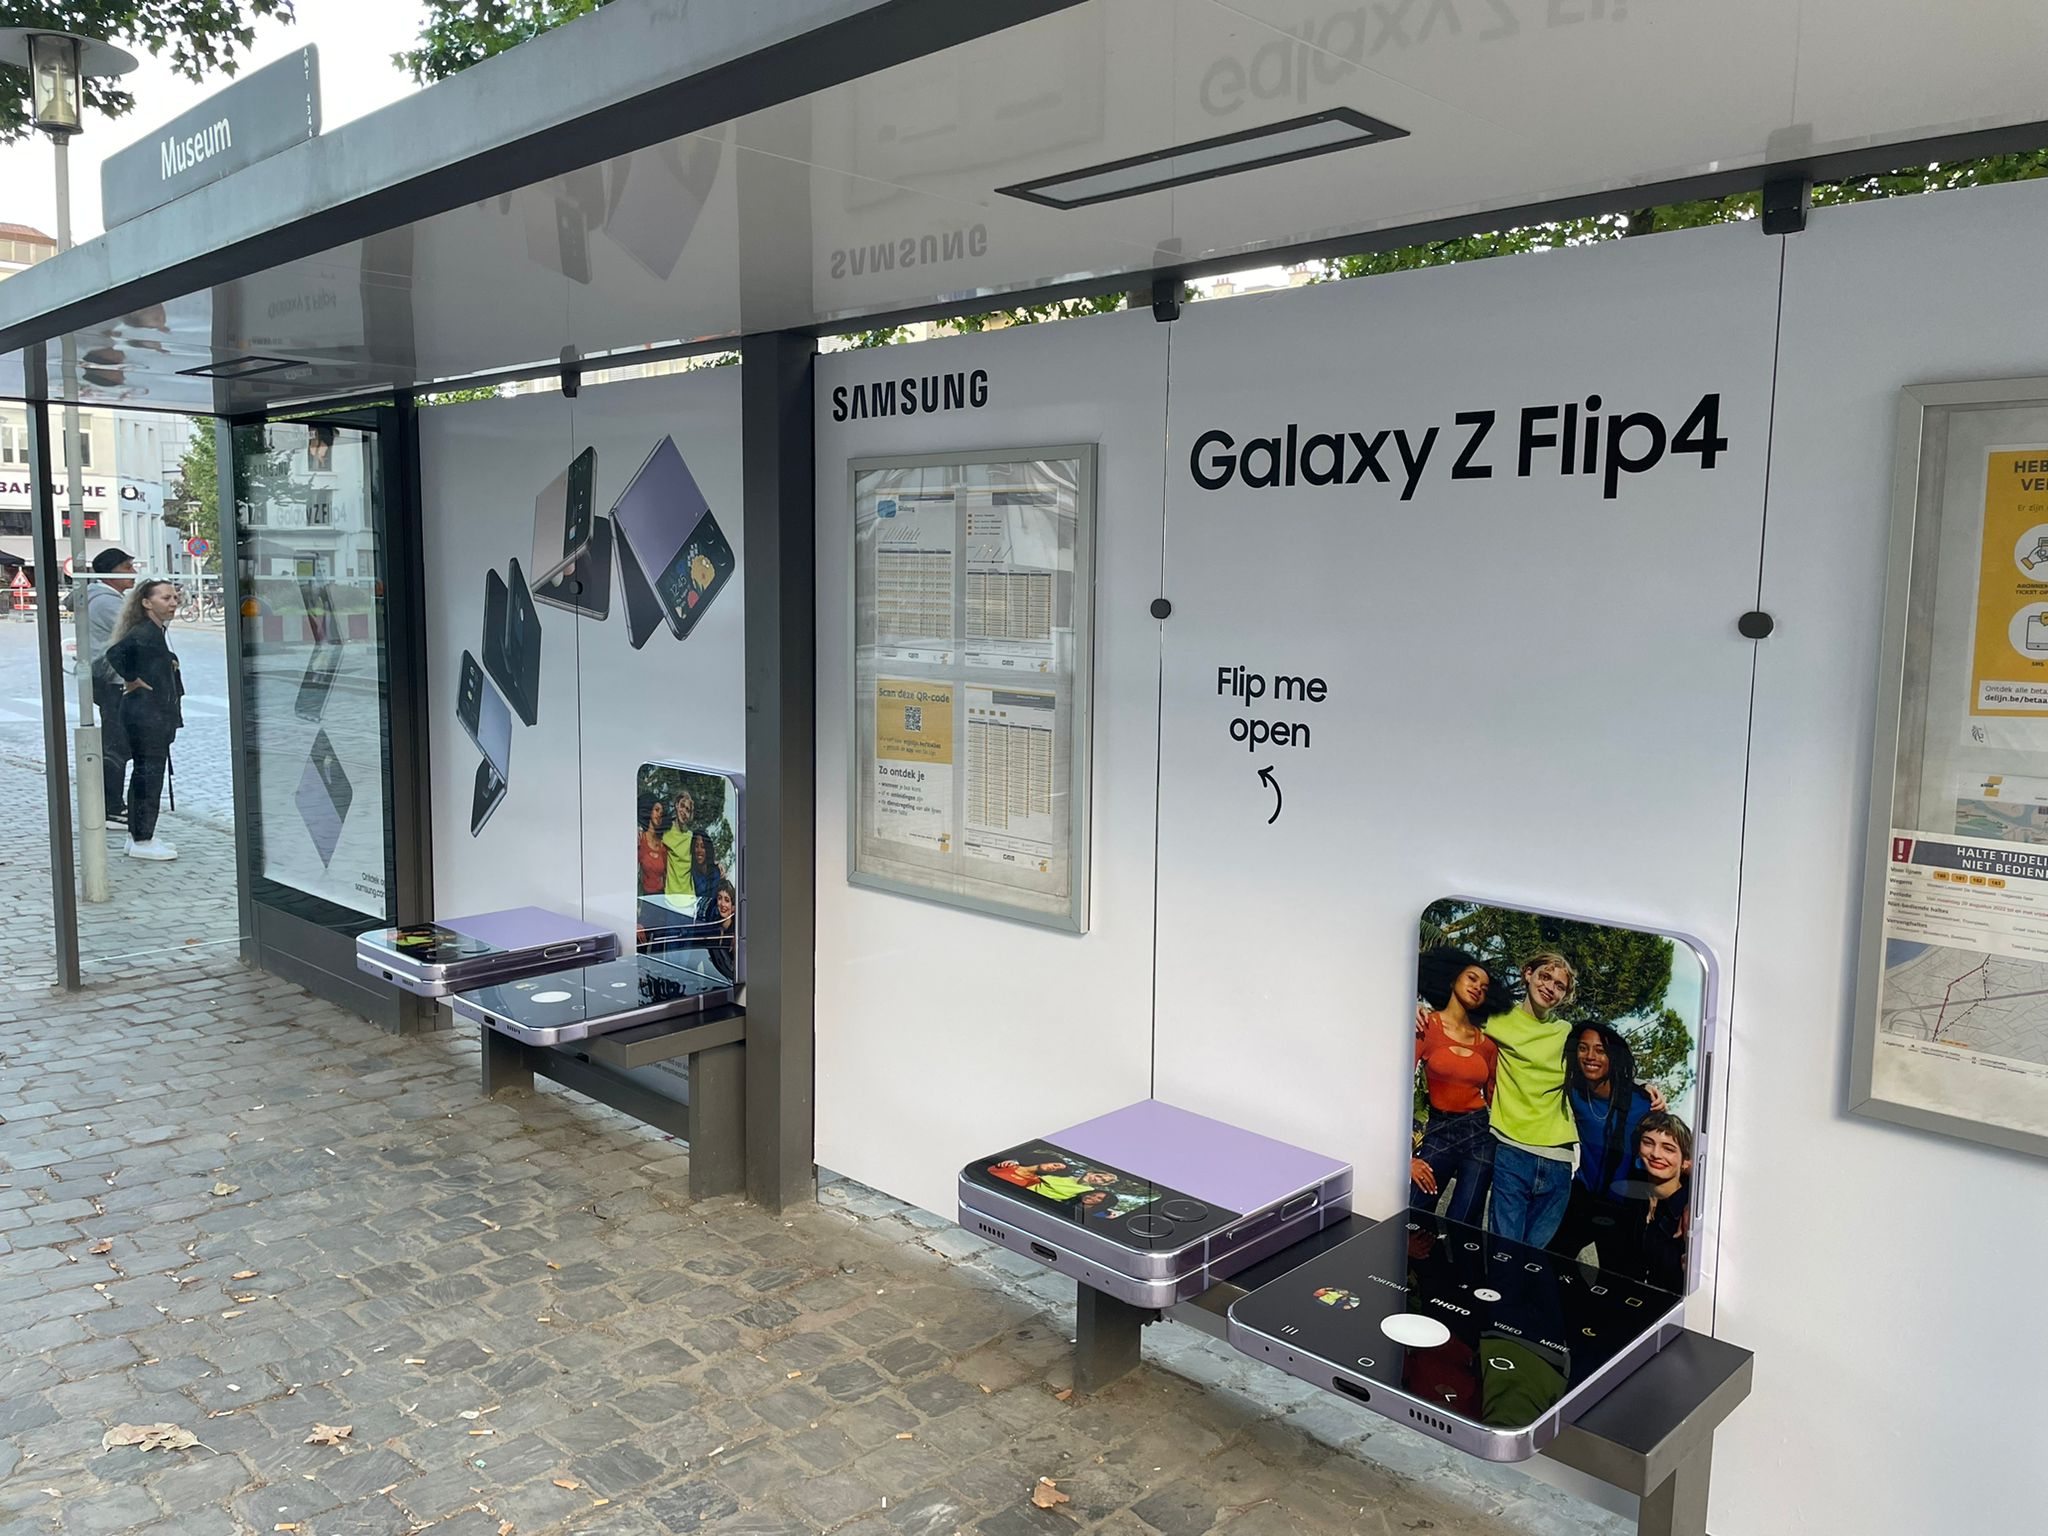 Samsung plooit voor de Galaxy Z Flip4